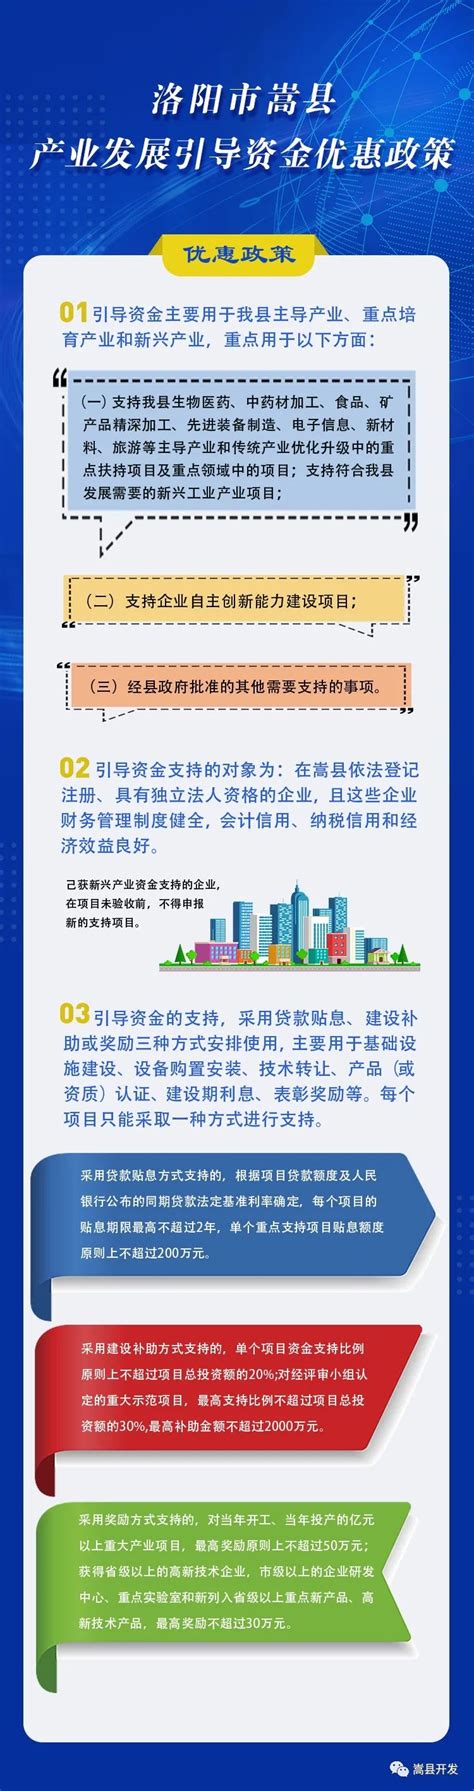 嵩县产业发展引导资金优惠政策图解 嵩县人民政府